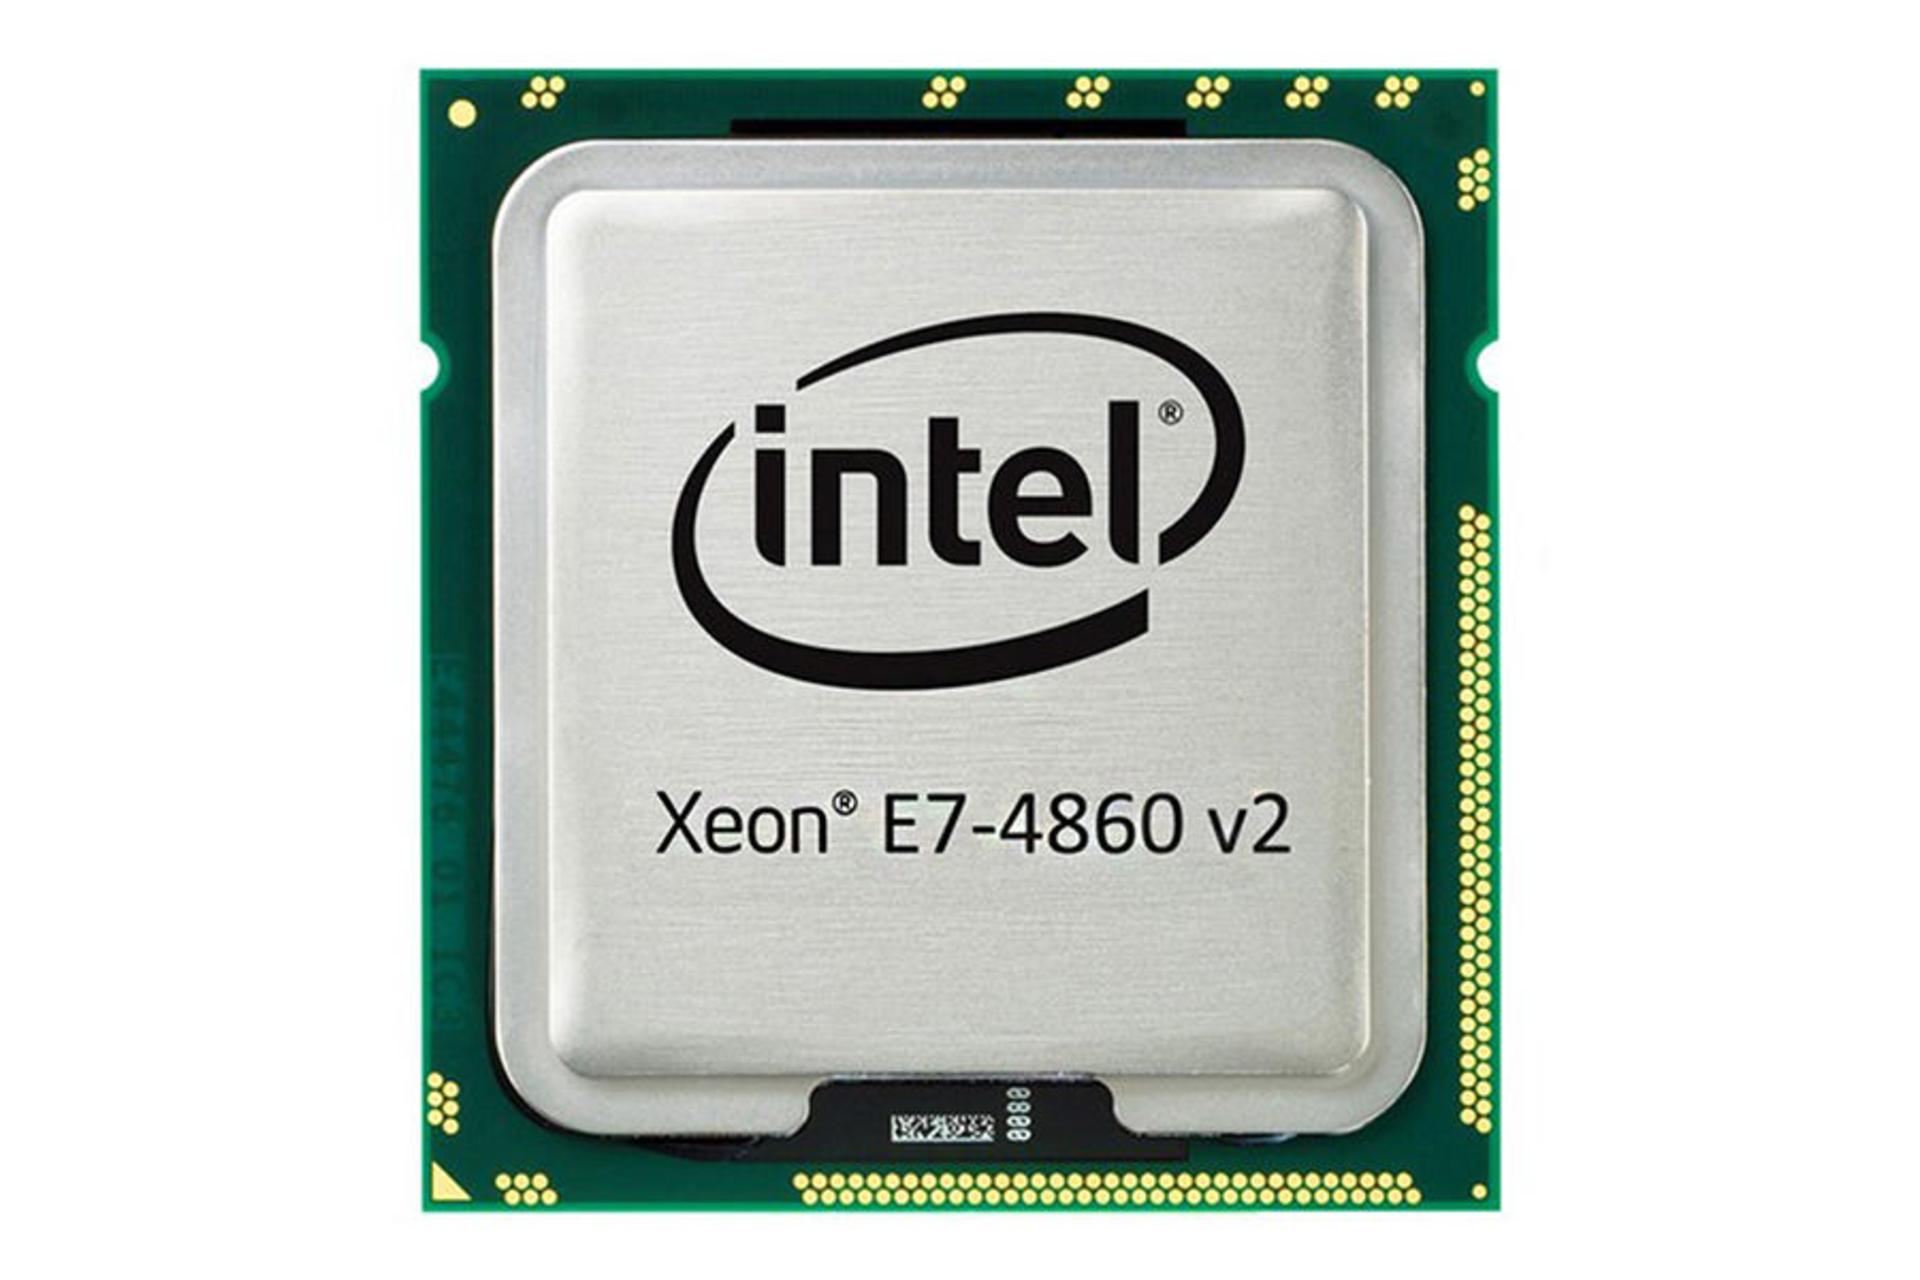 Intel Xeon E7-4860 v2 / اینتل Xeon E7-4860 v2